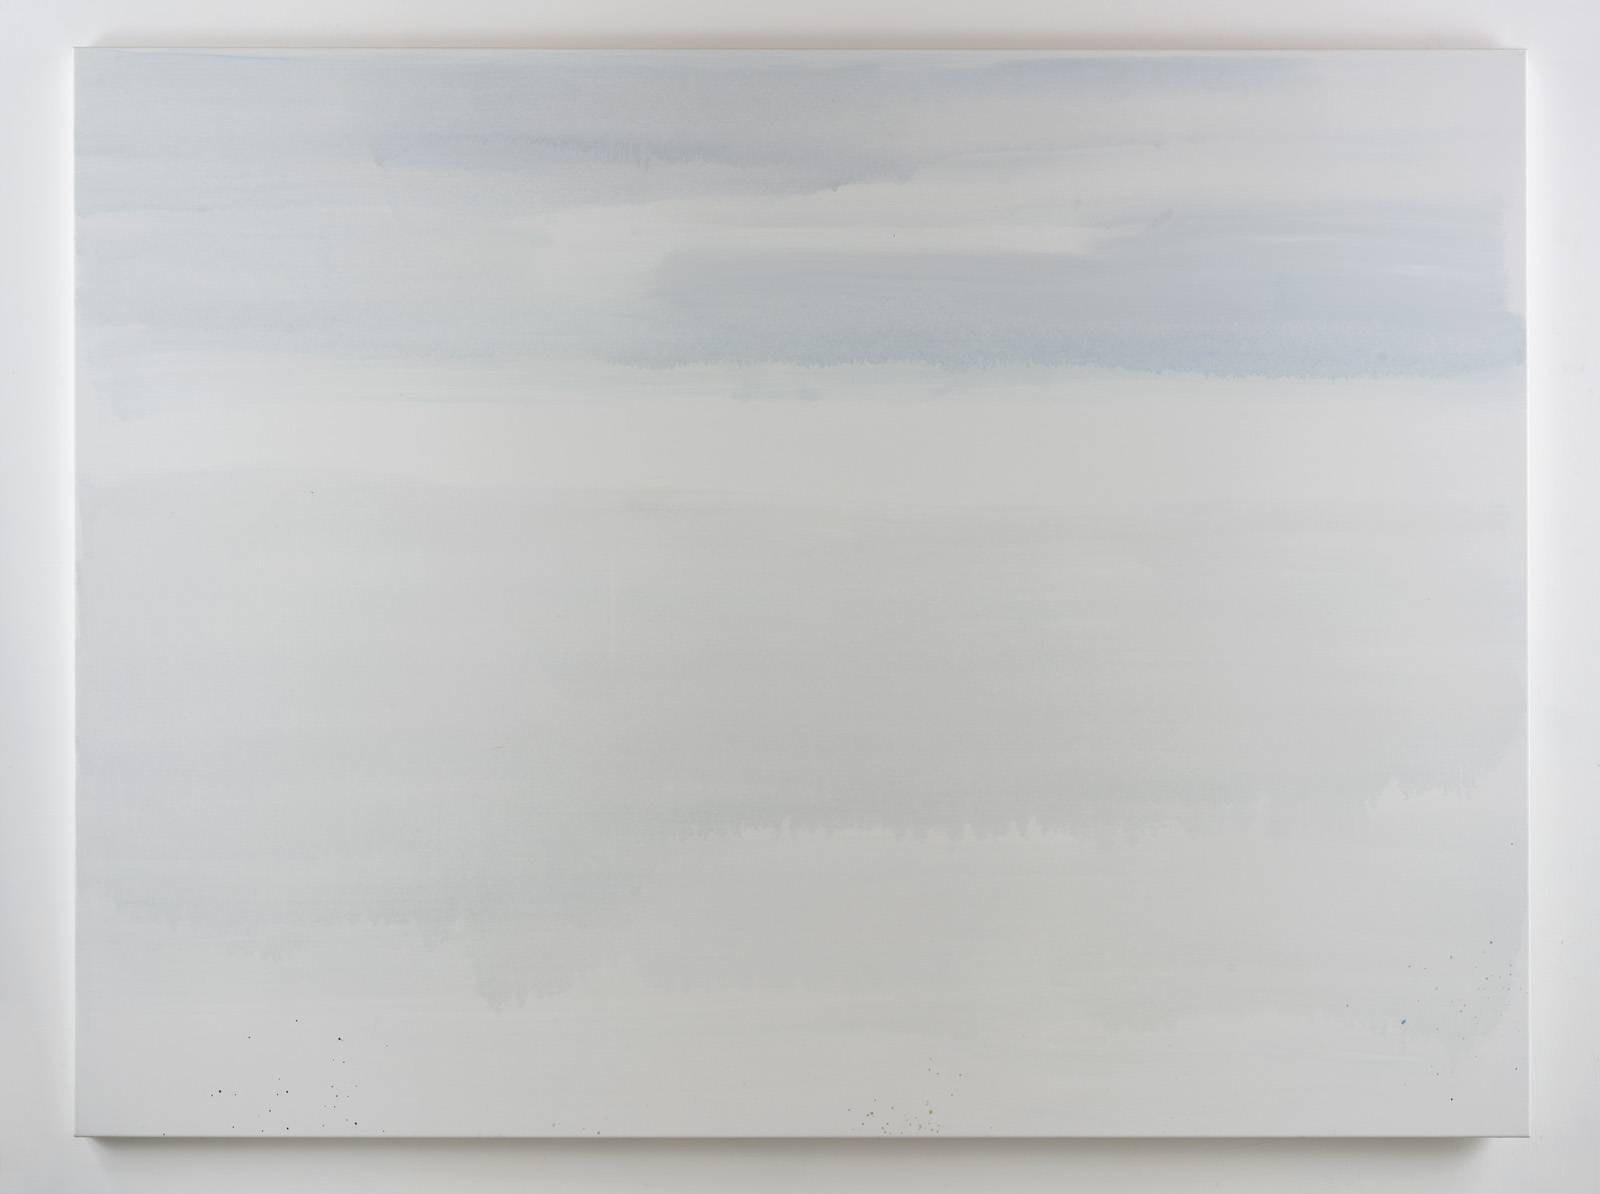 Grief, 180cm x 240cm, Oil on canvas, 2015